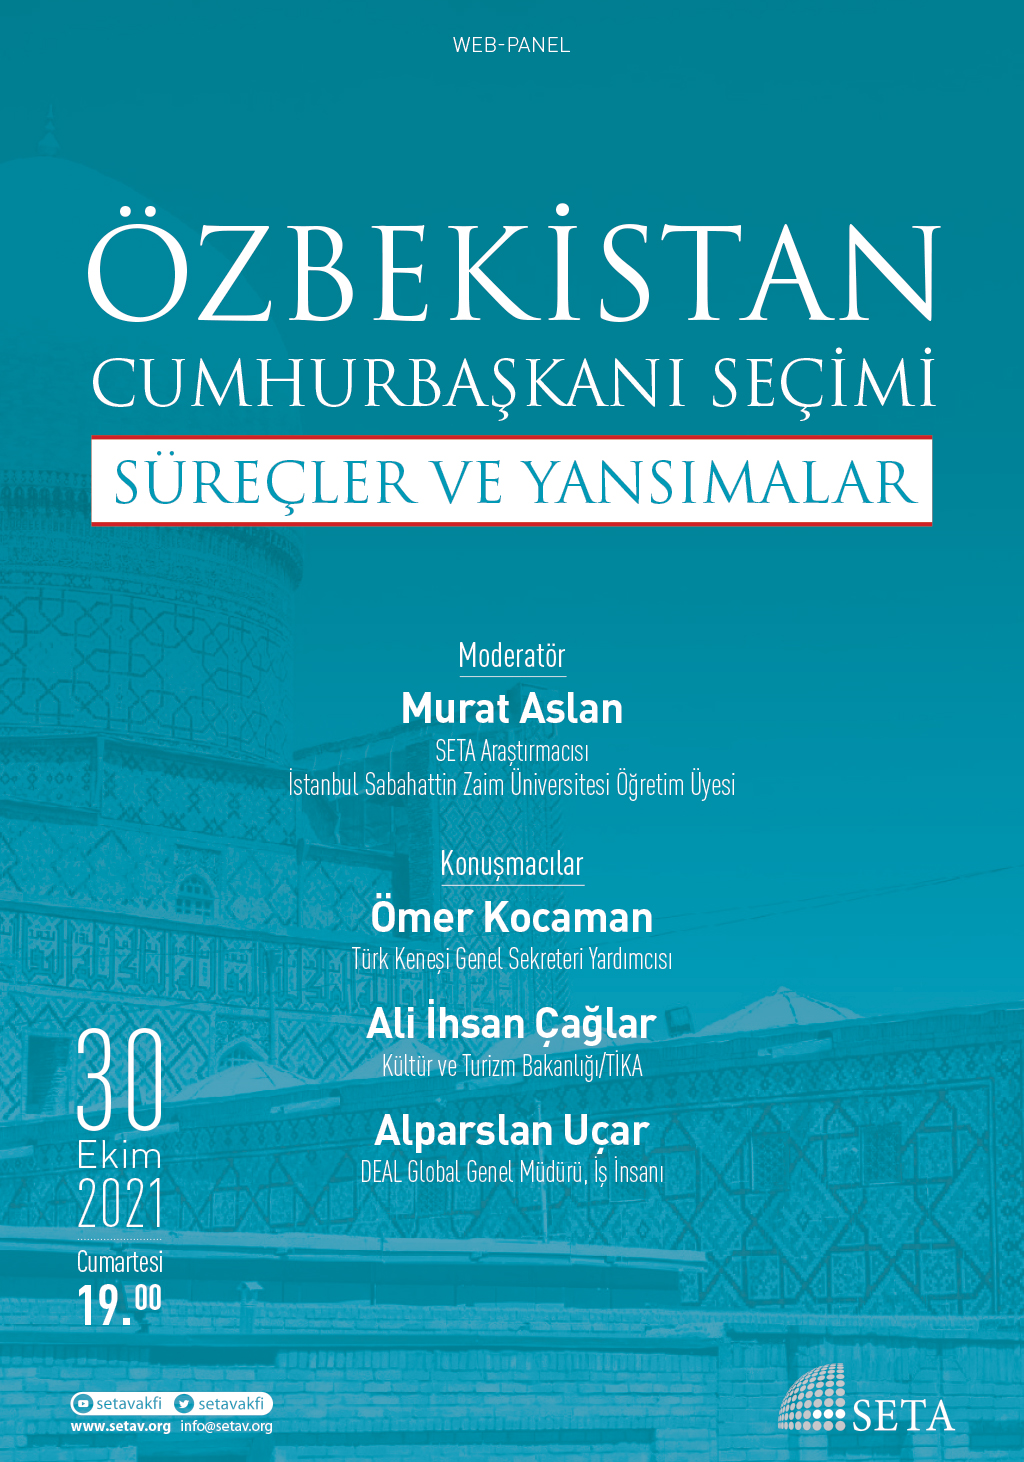 Web Panel: Özbekistan Cumhurbaşkanı Seçimi | Süreçler ve Yansımalar